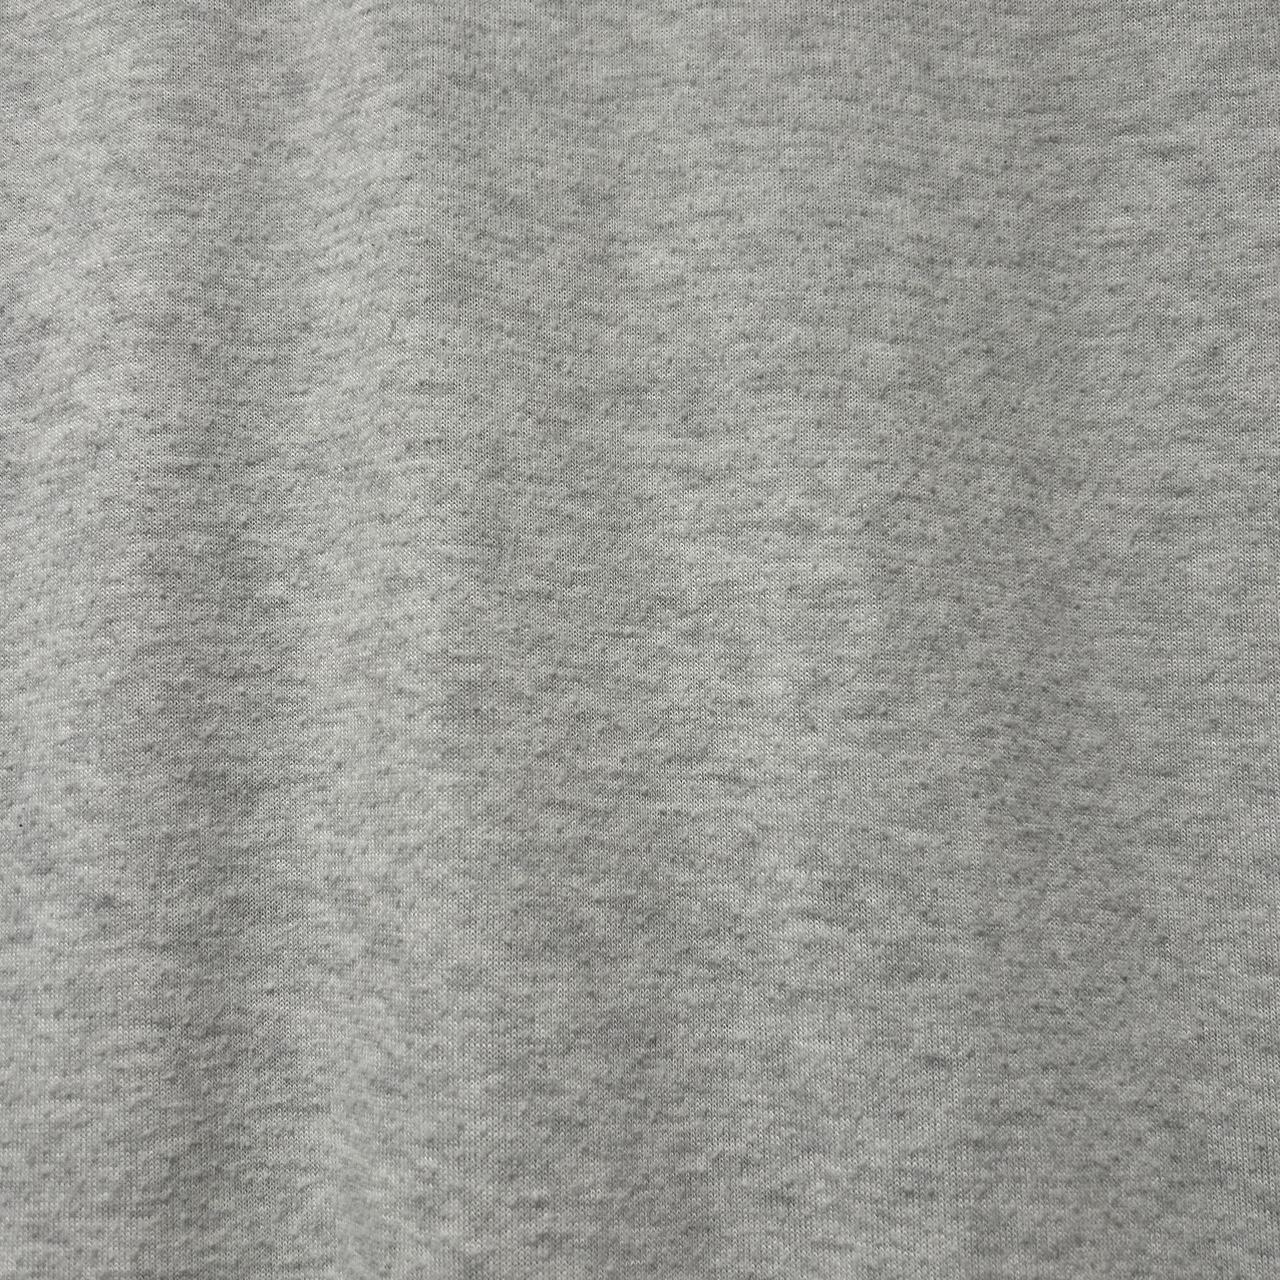 Gaiam yoga grey mandala t-shirt 🧘‍♀️ ♡ Gently - Depop